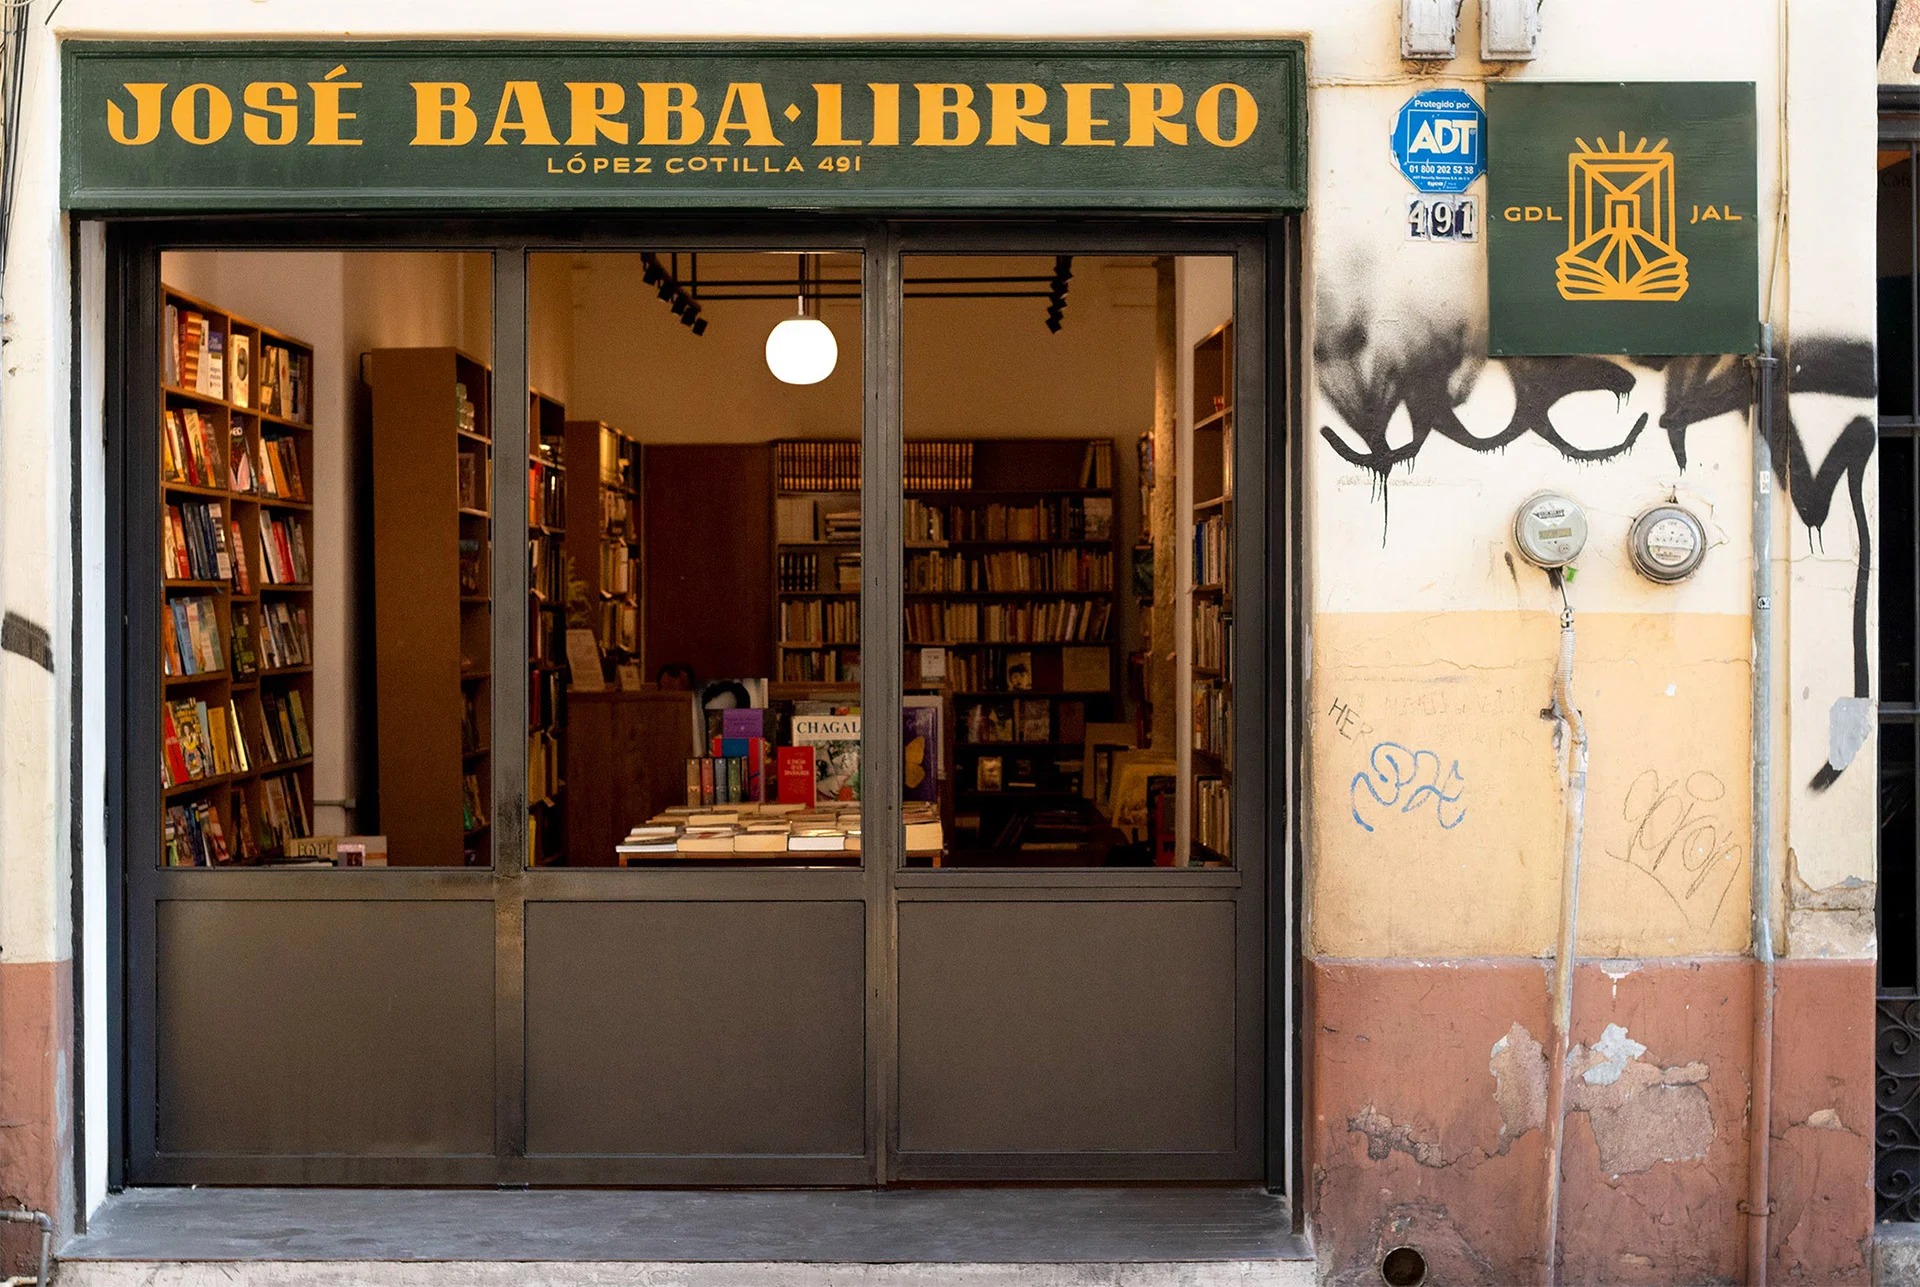 José Barba Librero复古书店视觉形象设计